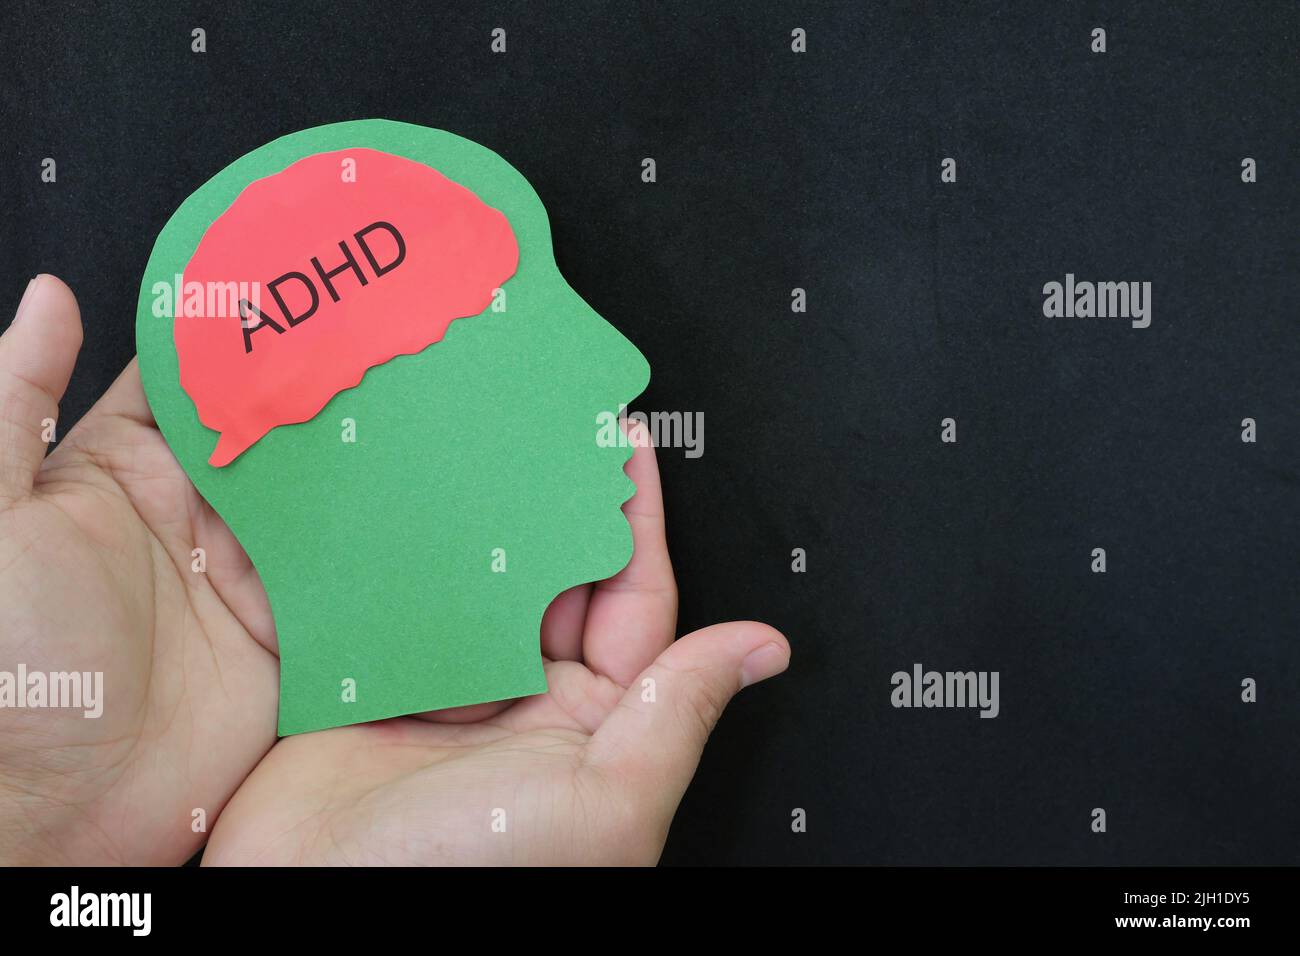 Cura del paziente, recupero, terapia e trattamento del paziente ADHD. Mano che tiene il profilo della testa umana con il testo della parola sul cervello. Foto Stock